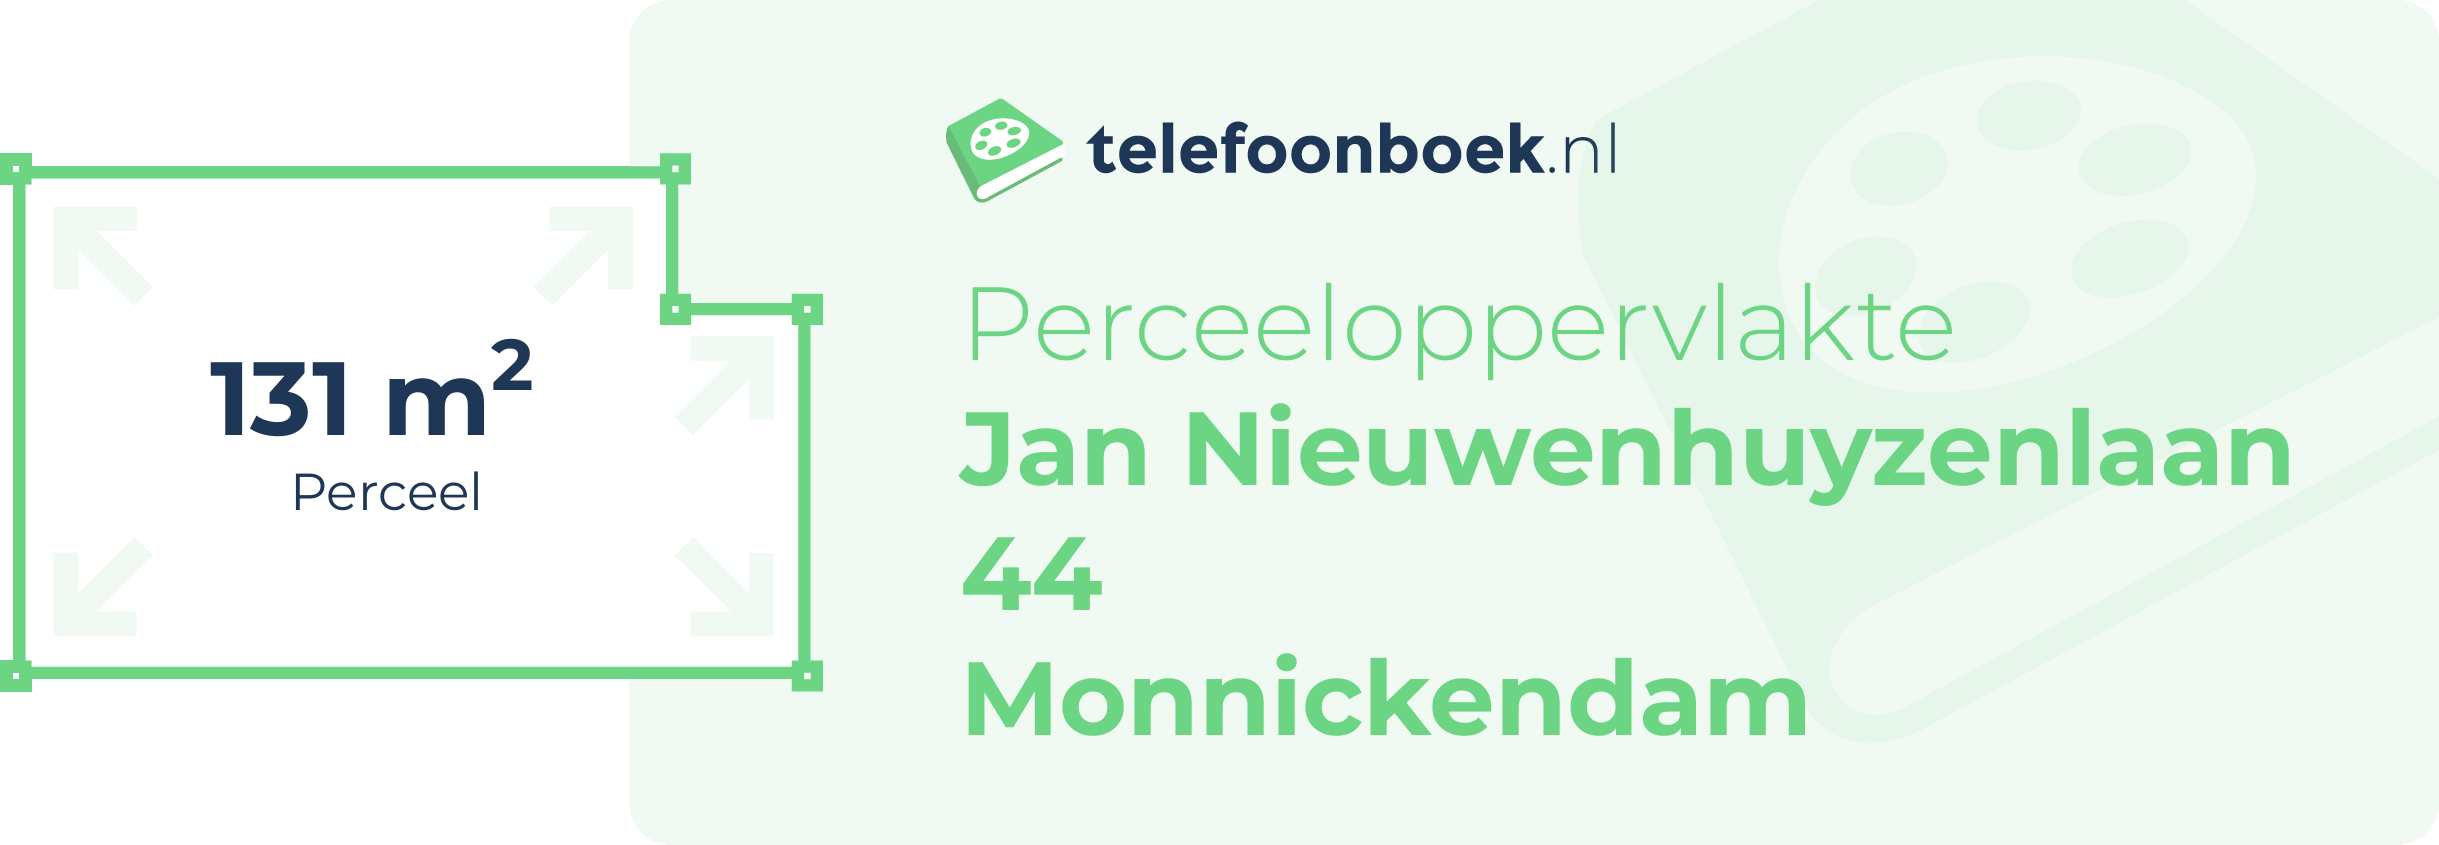 Perceeloppervlakte Jan Nieuwenhuyzenlaan 44 Monnickendam